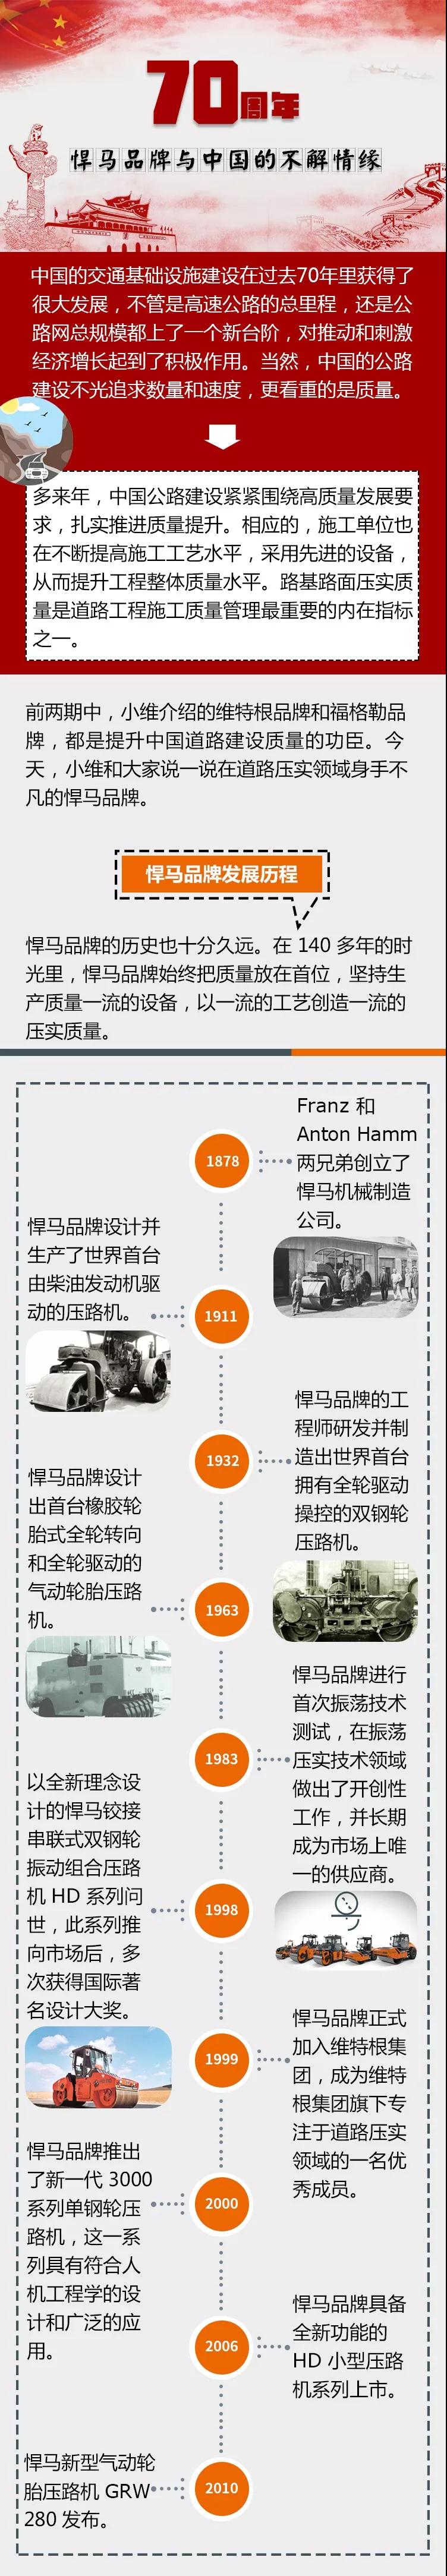 国庆70周年献礼 | 悍马品牌与中国的不解情缘